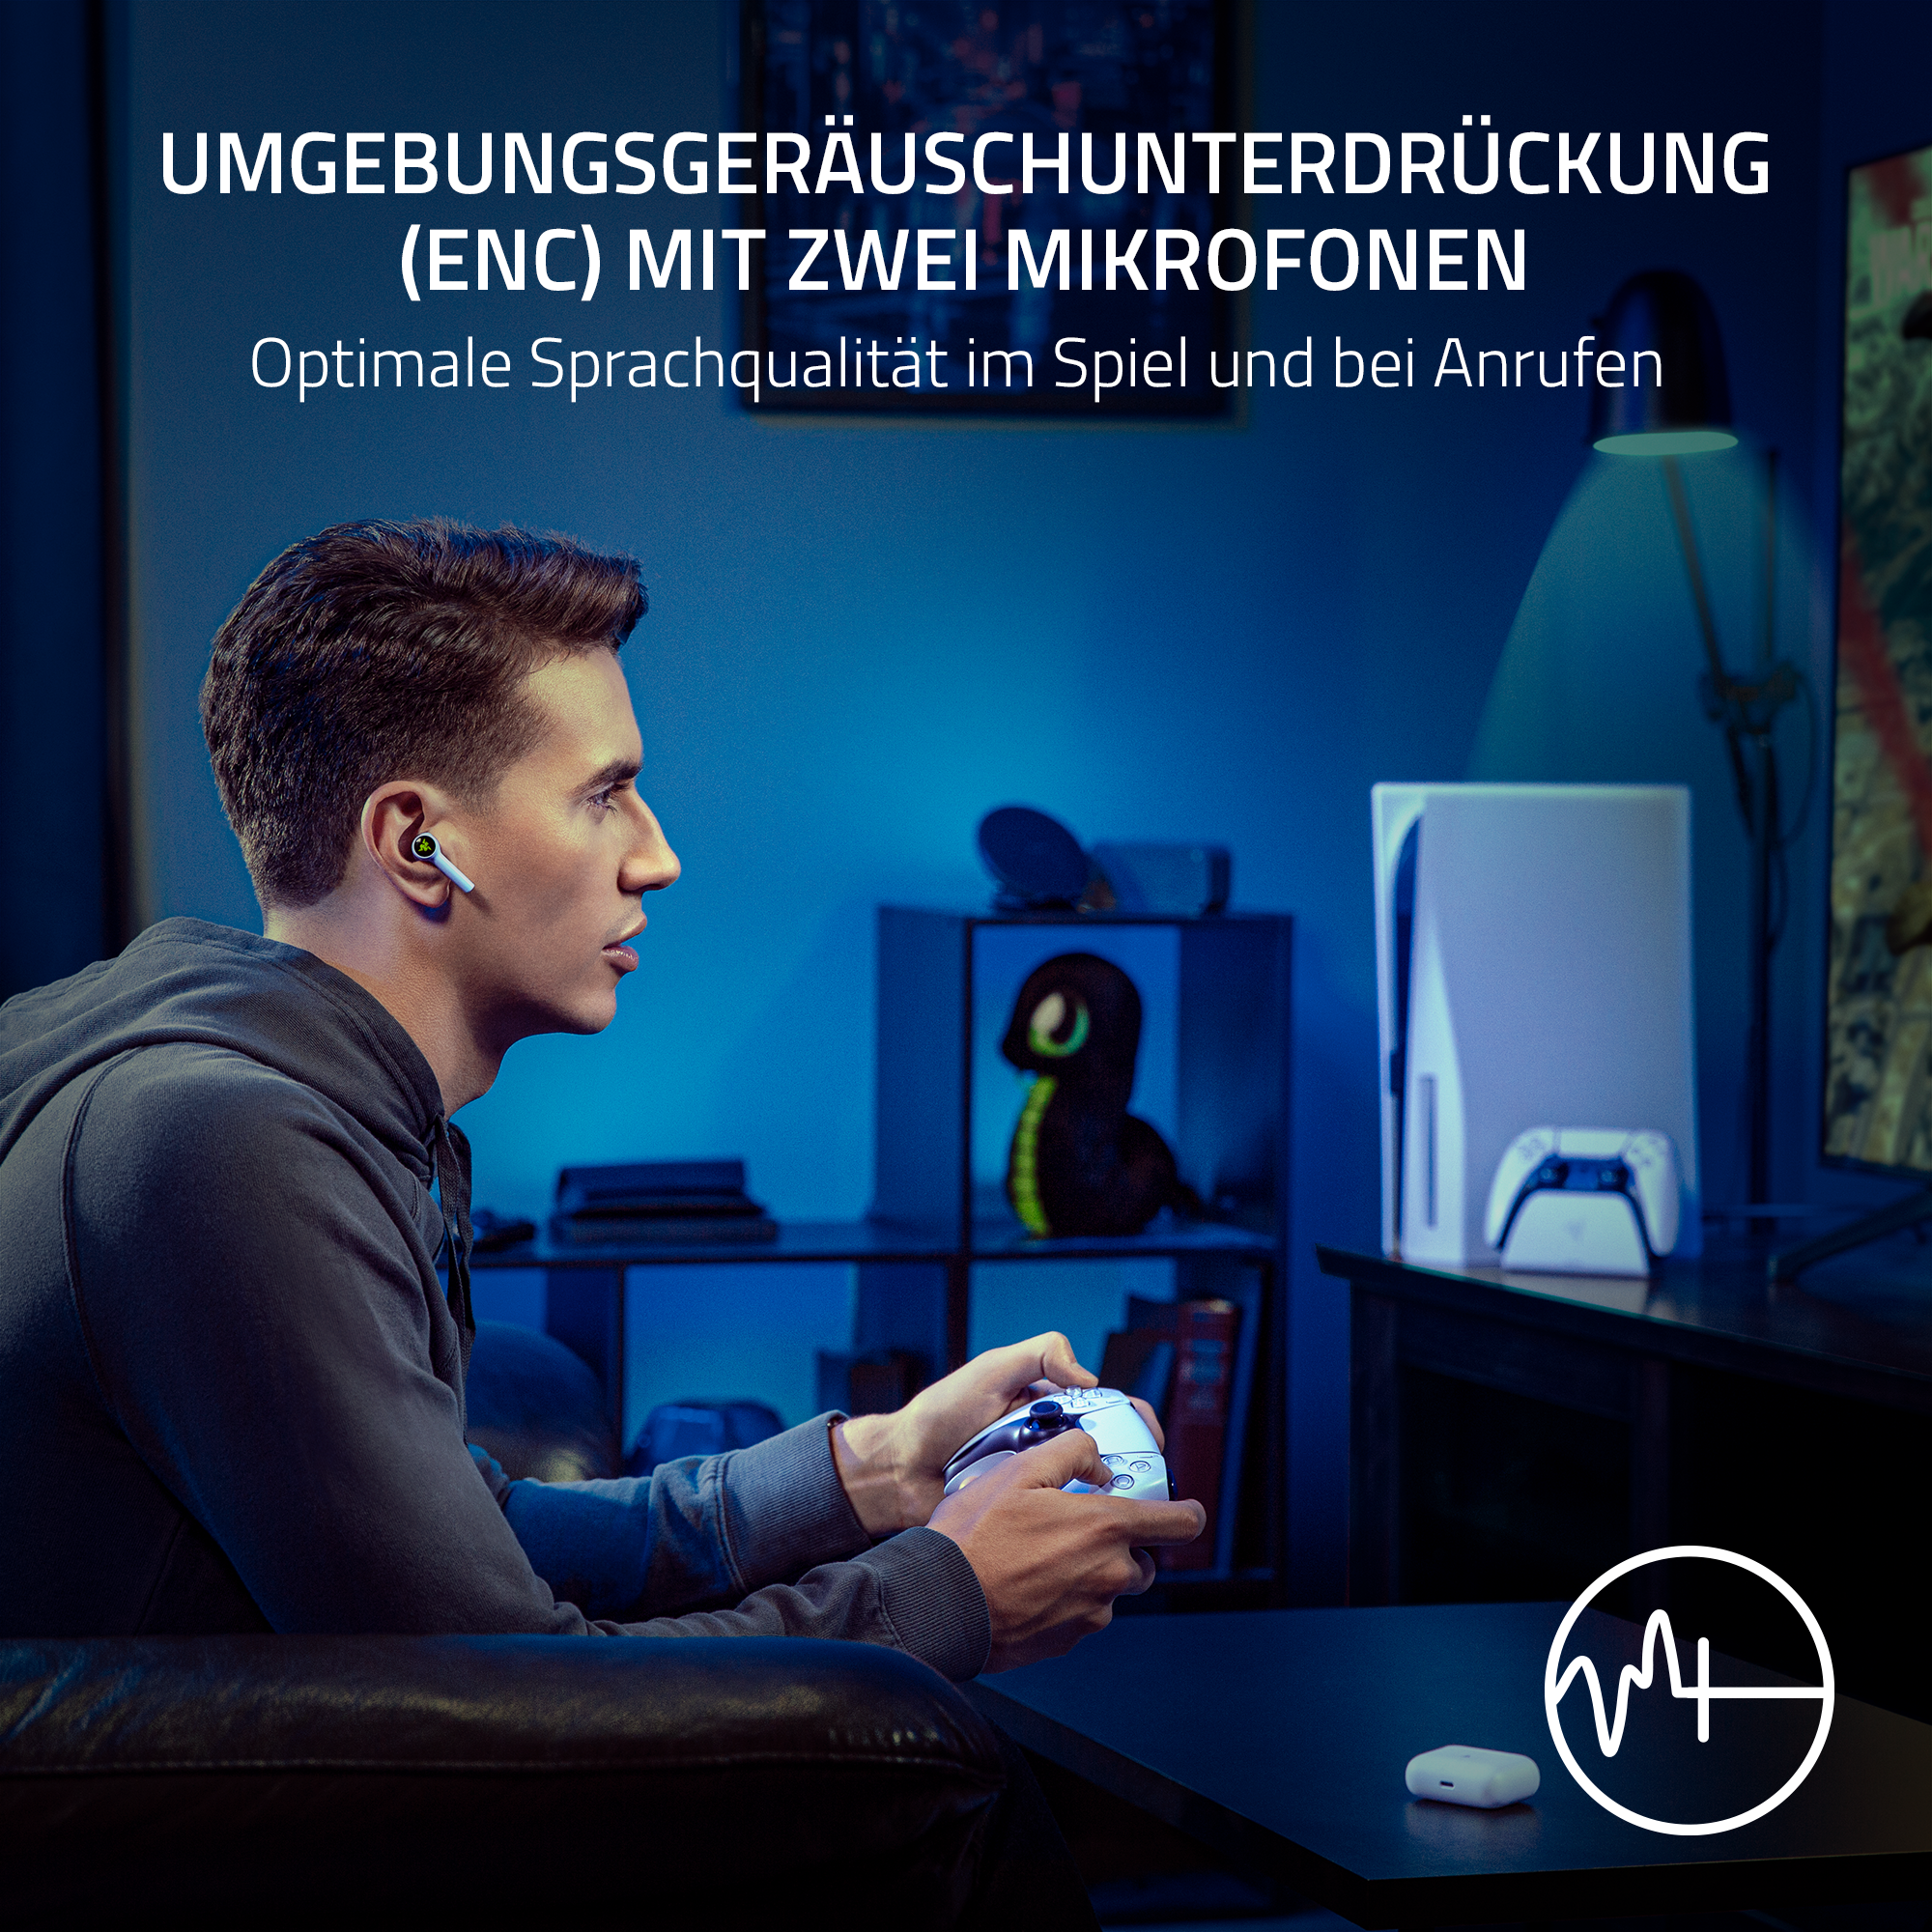 PlayStation - Weiß, Headset HyperSpeed Gaming Hammerhead Weiß für RAZER In-ear